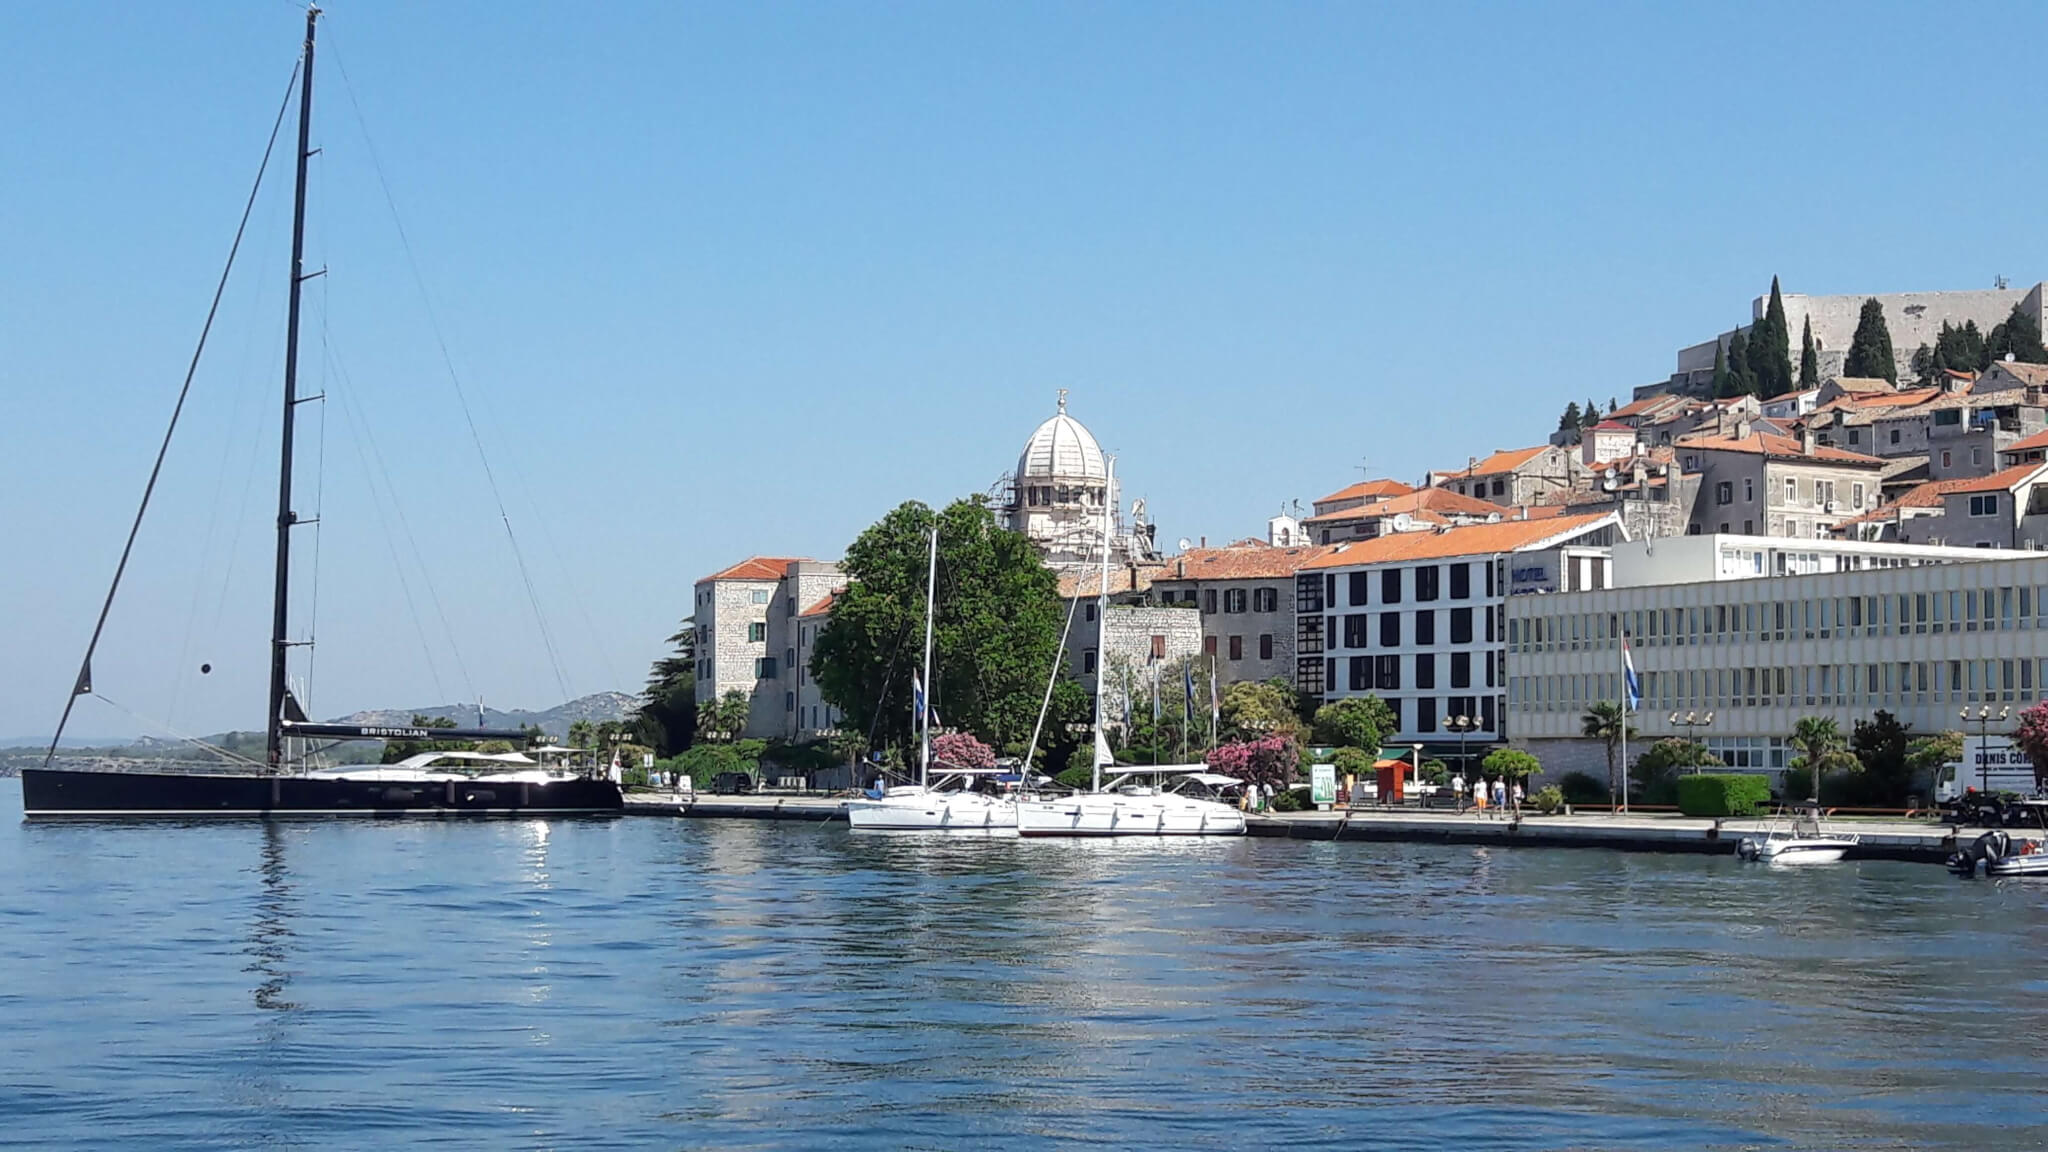 Bootsführerschein in Kroatien absolvieren und wunderbare Tage an der Küste erleben.